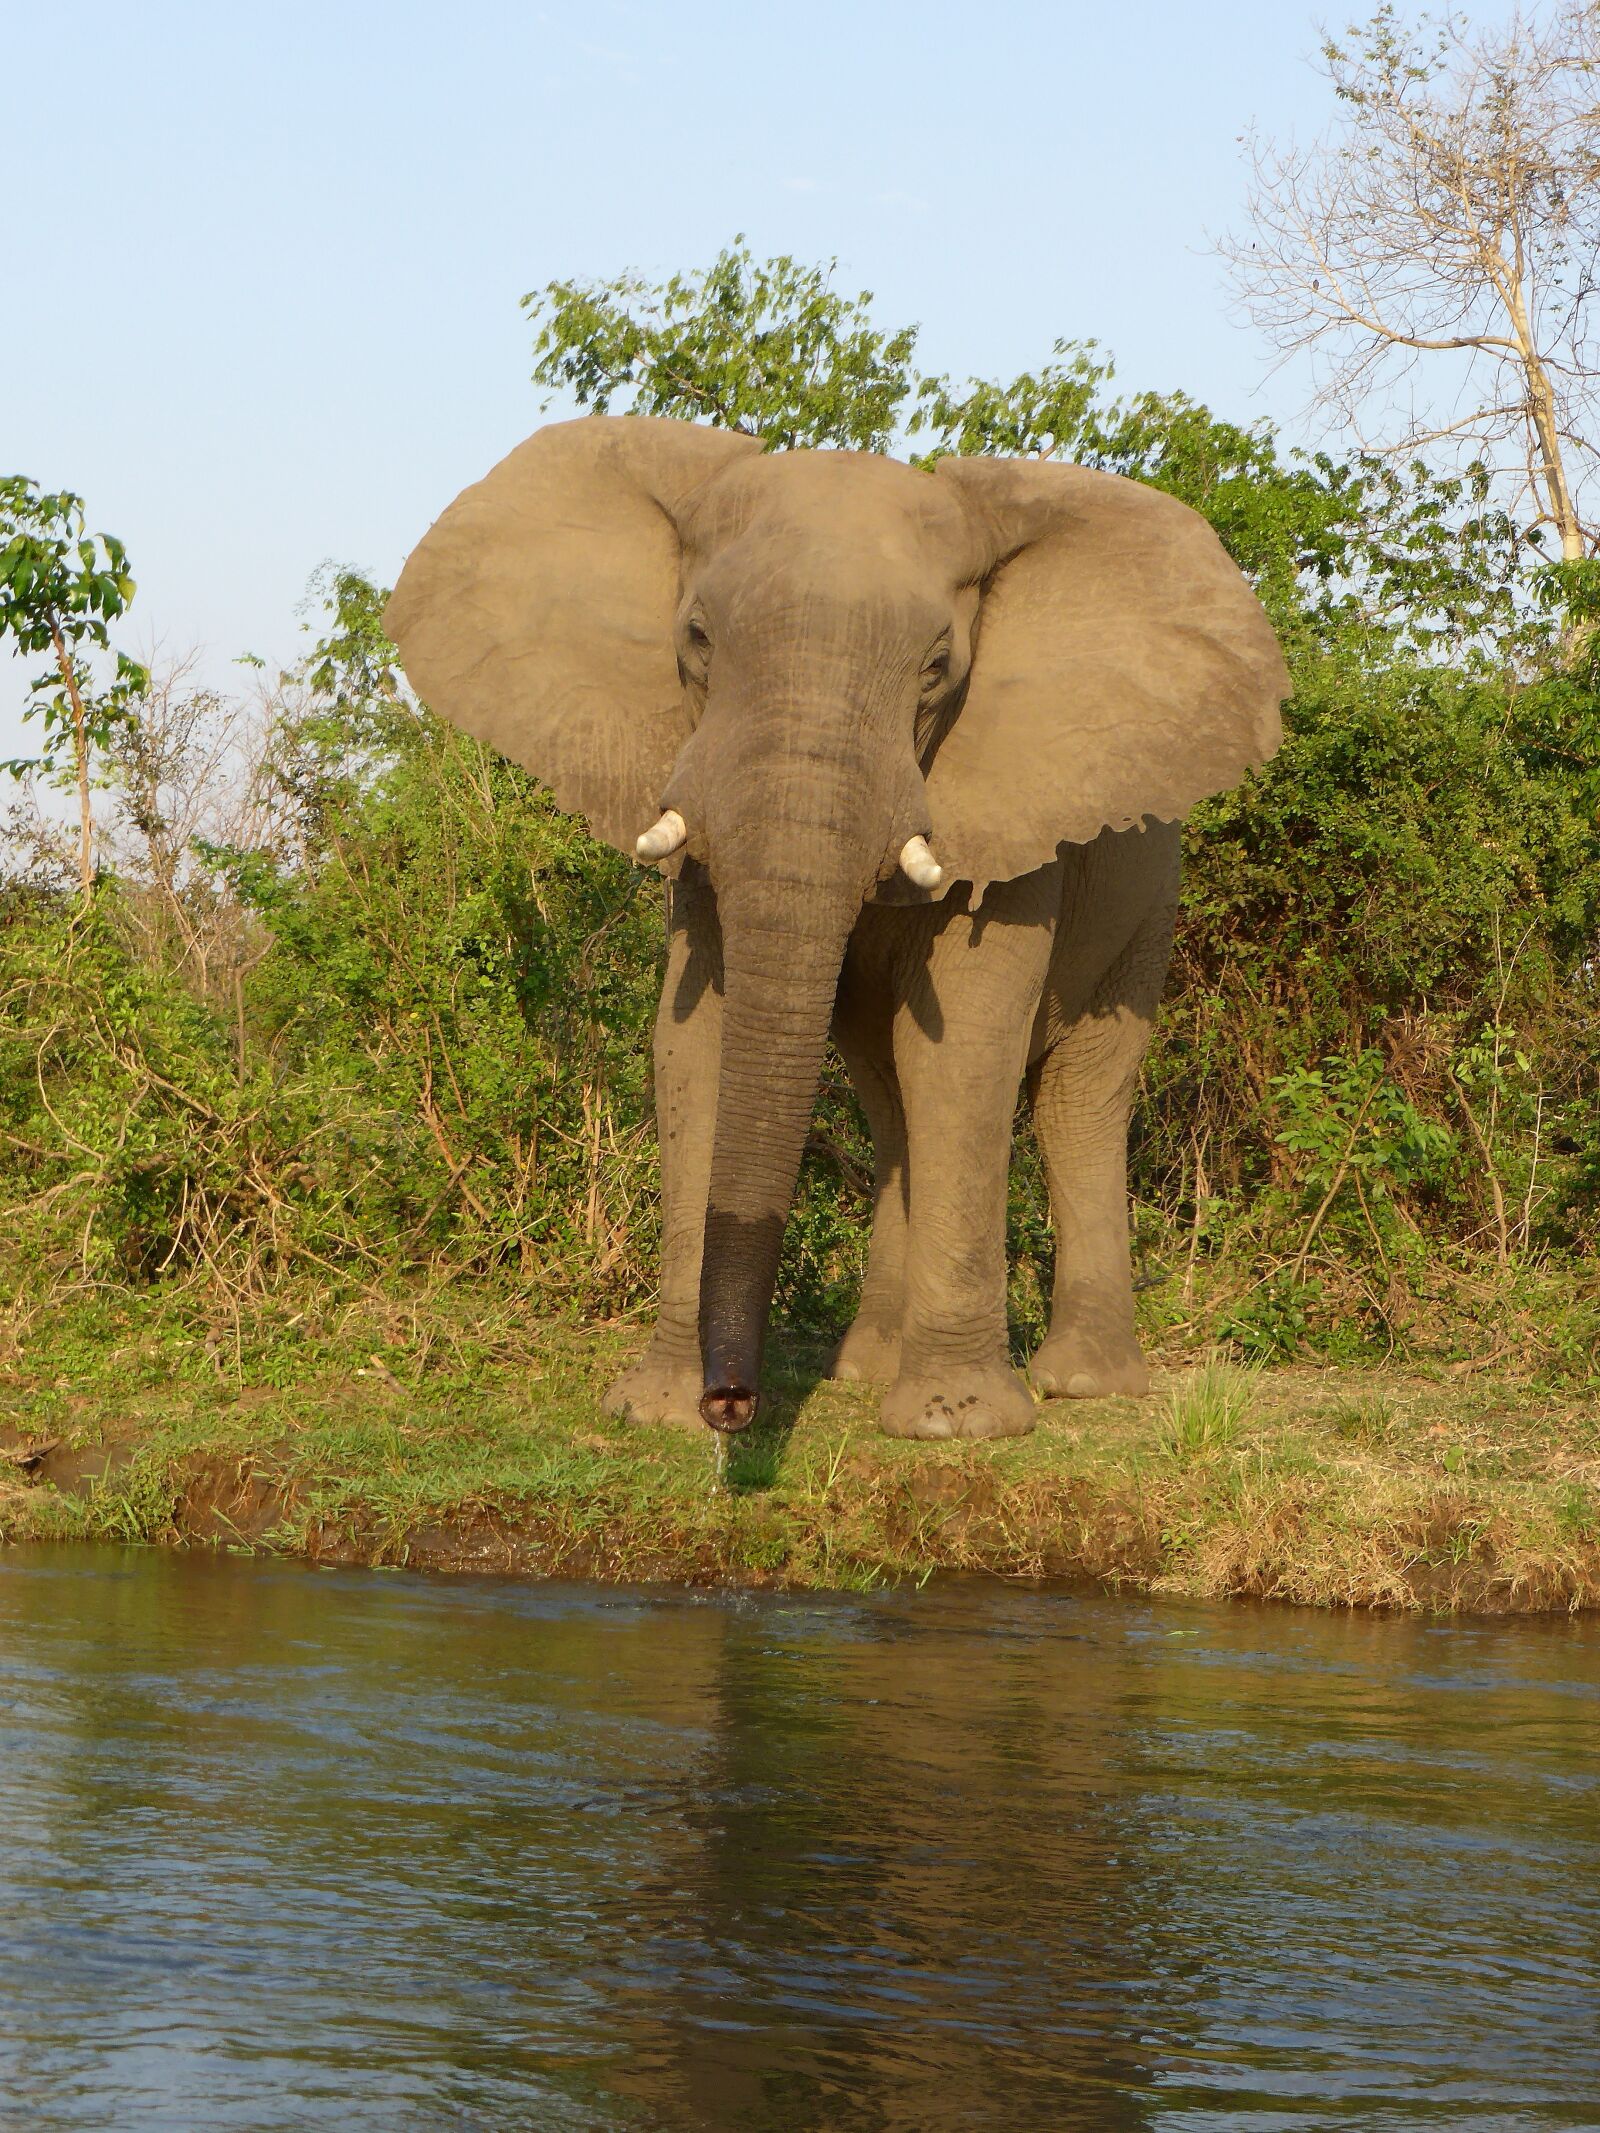 Panasonic DMC-TZ41 sample photo. Elephant, malawi, majete photography